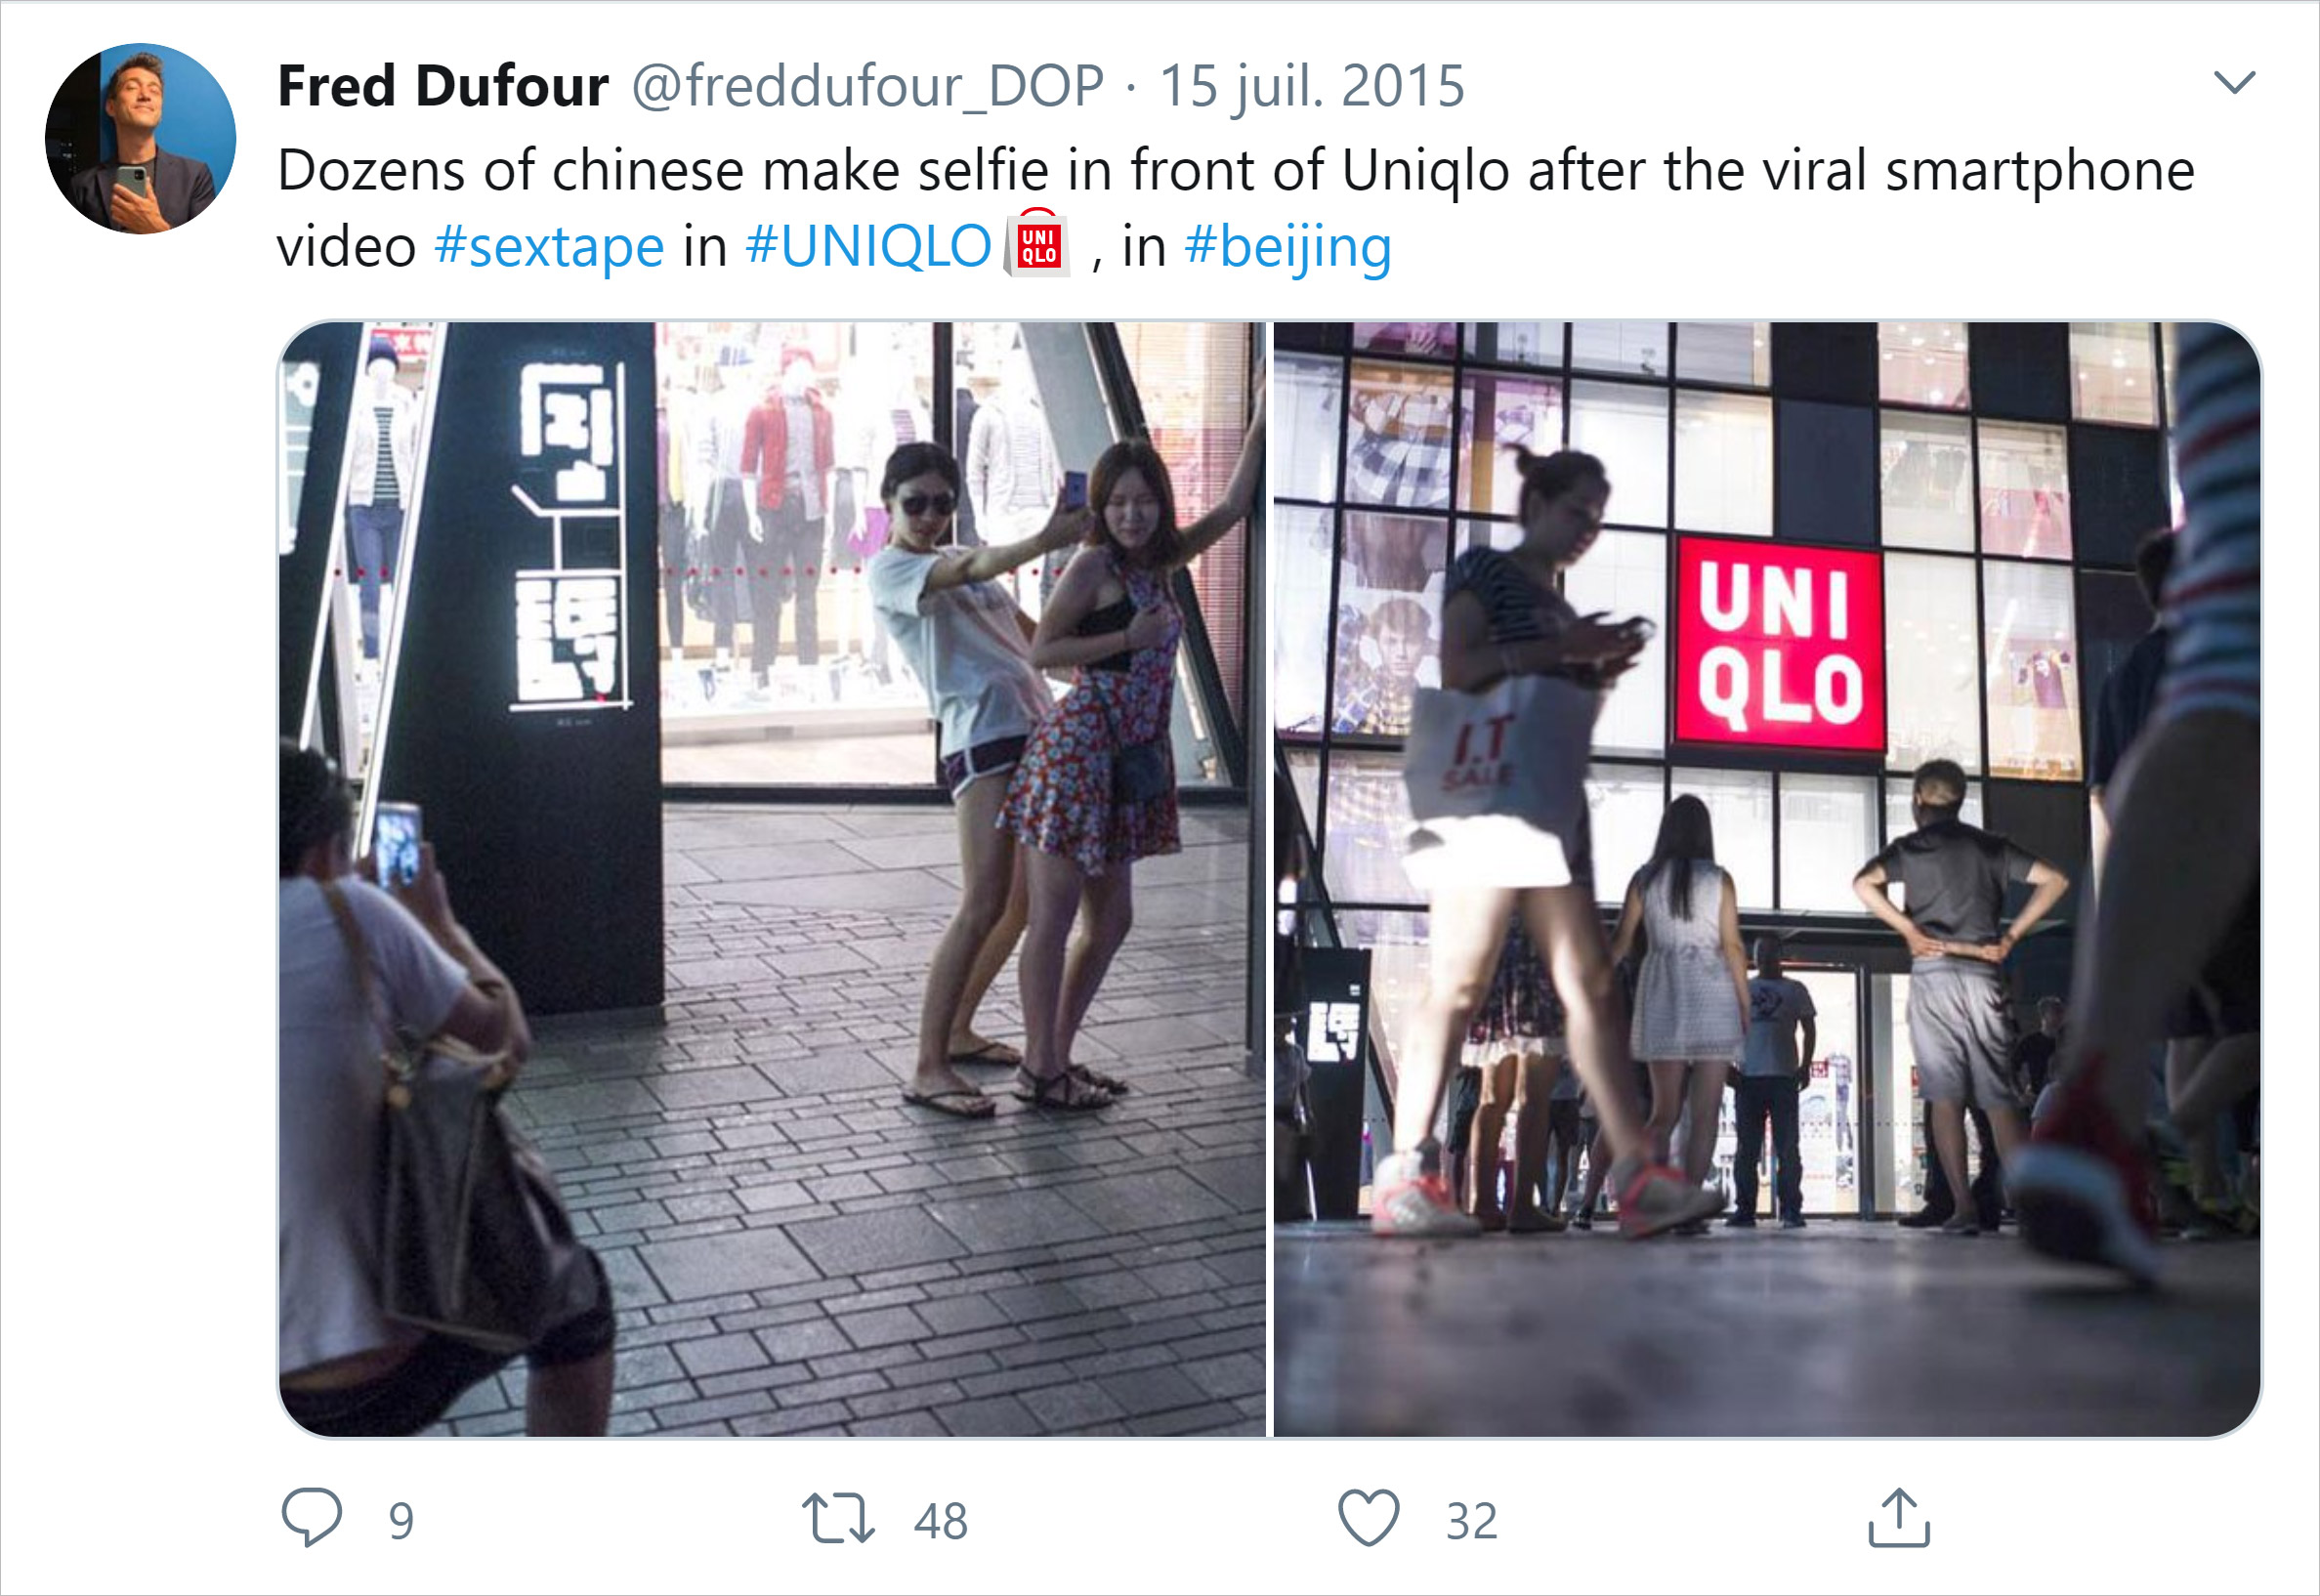 Tweet Fred Dufour Uniqlo